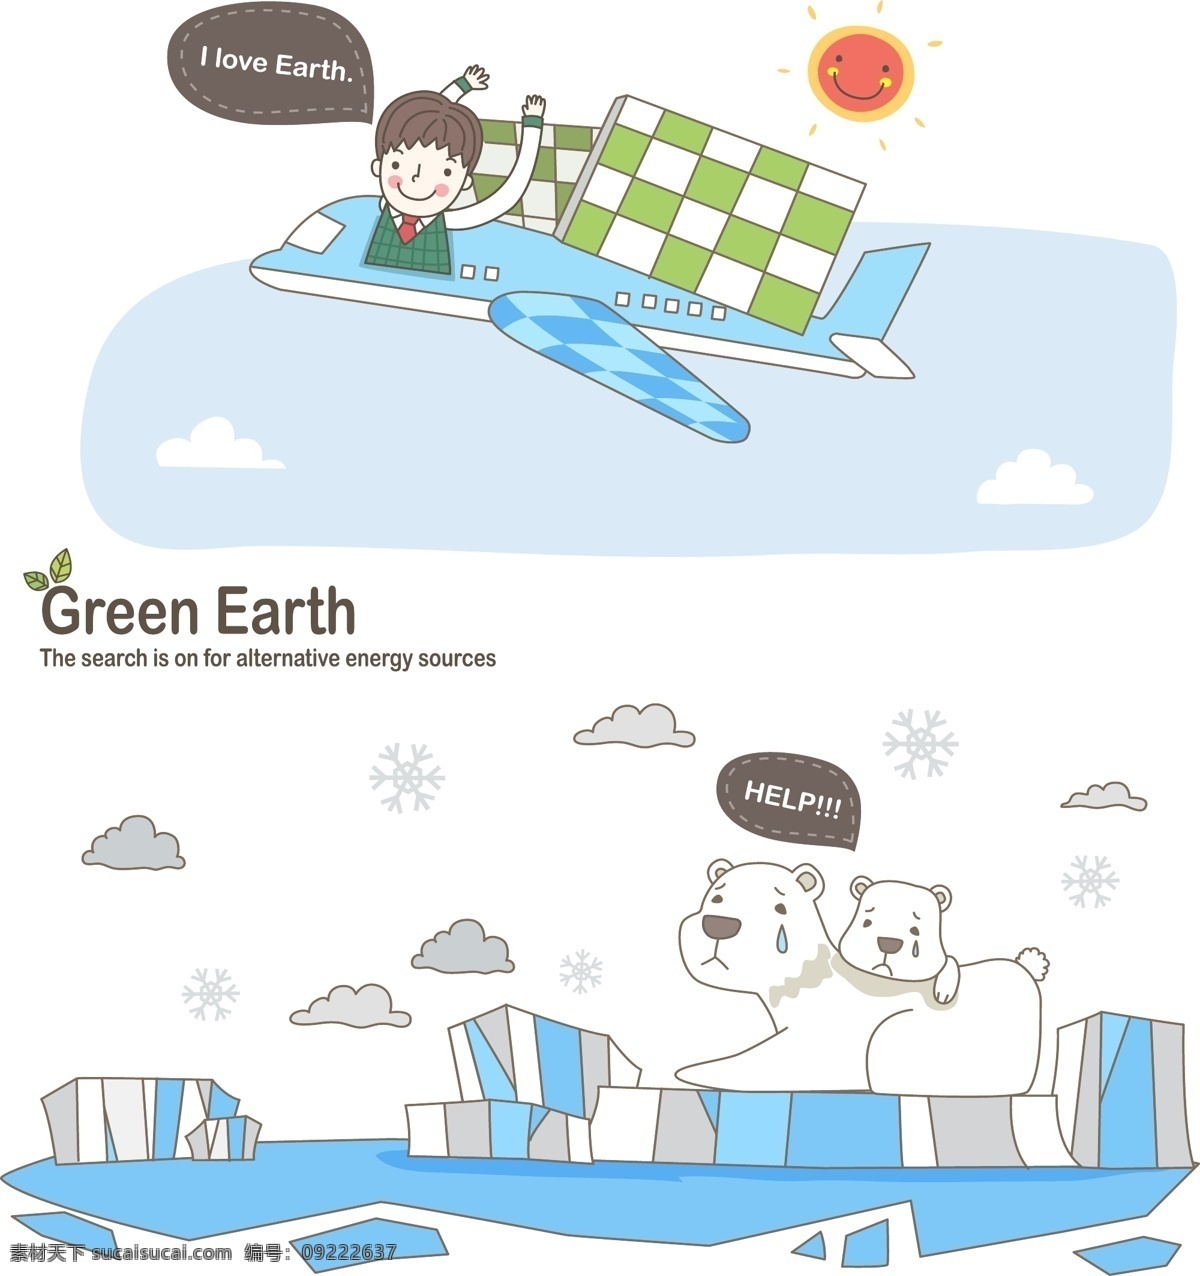 保护动物 绿色地球 冰川 南极 北极 北极熊 动物 保护 男孩 飞机 资源 漫画 卡通 卡通形象 矢量人物 矢量素材 白色